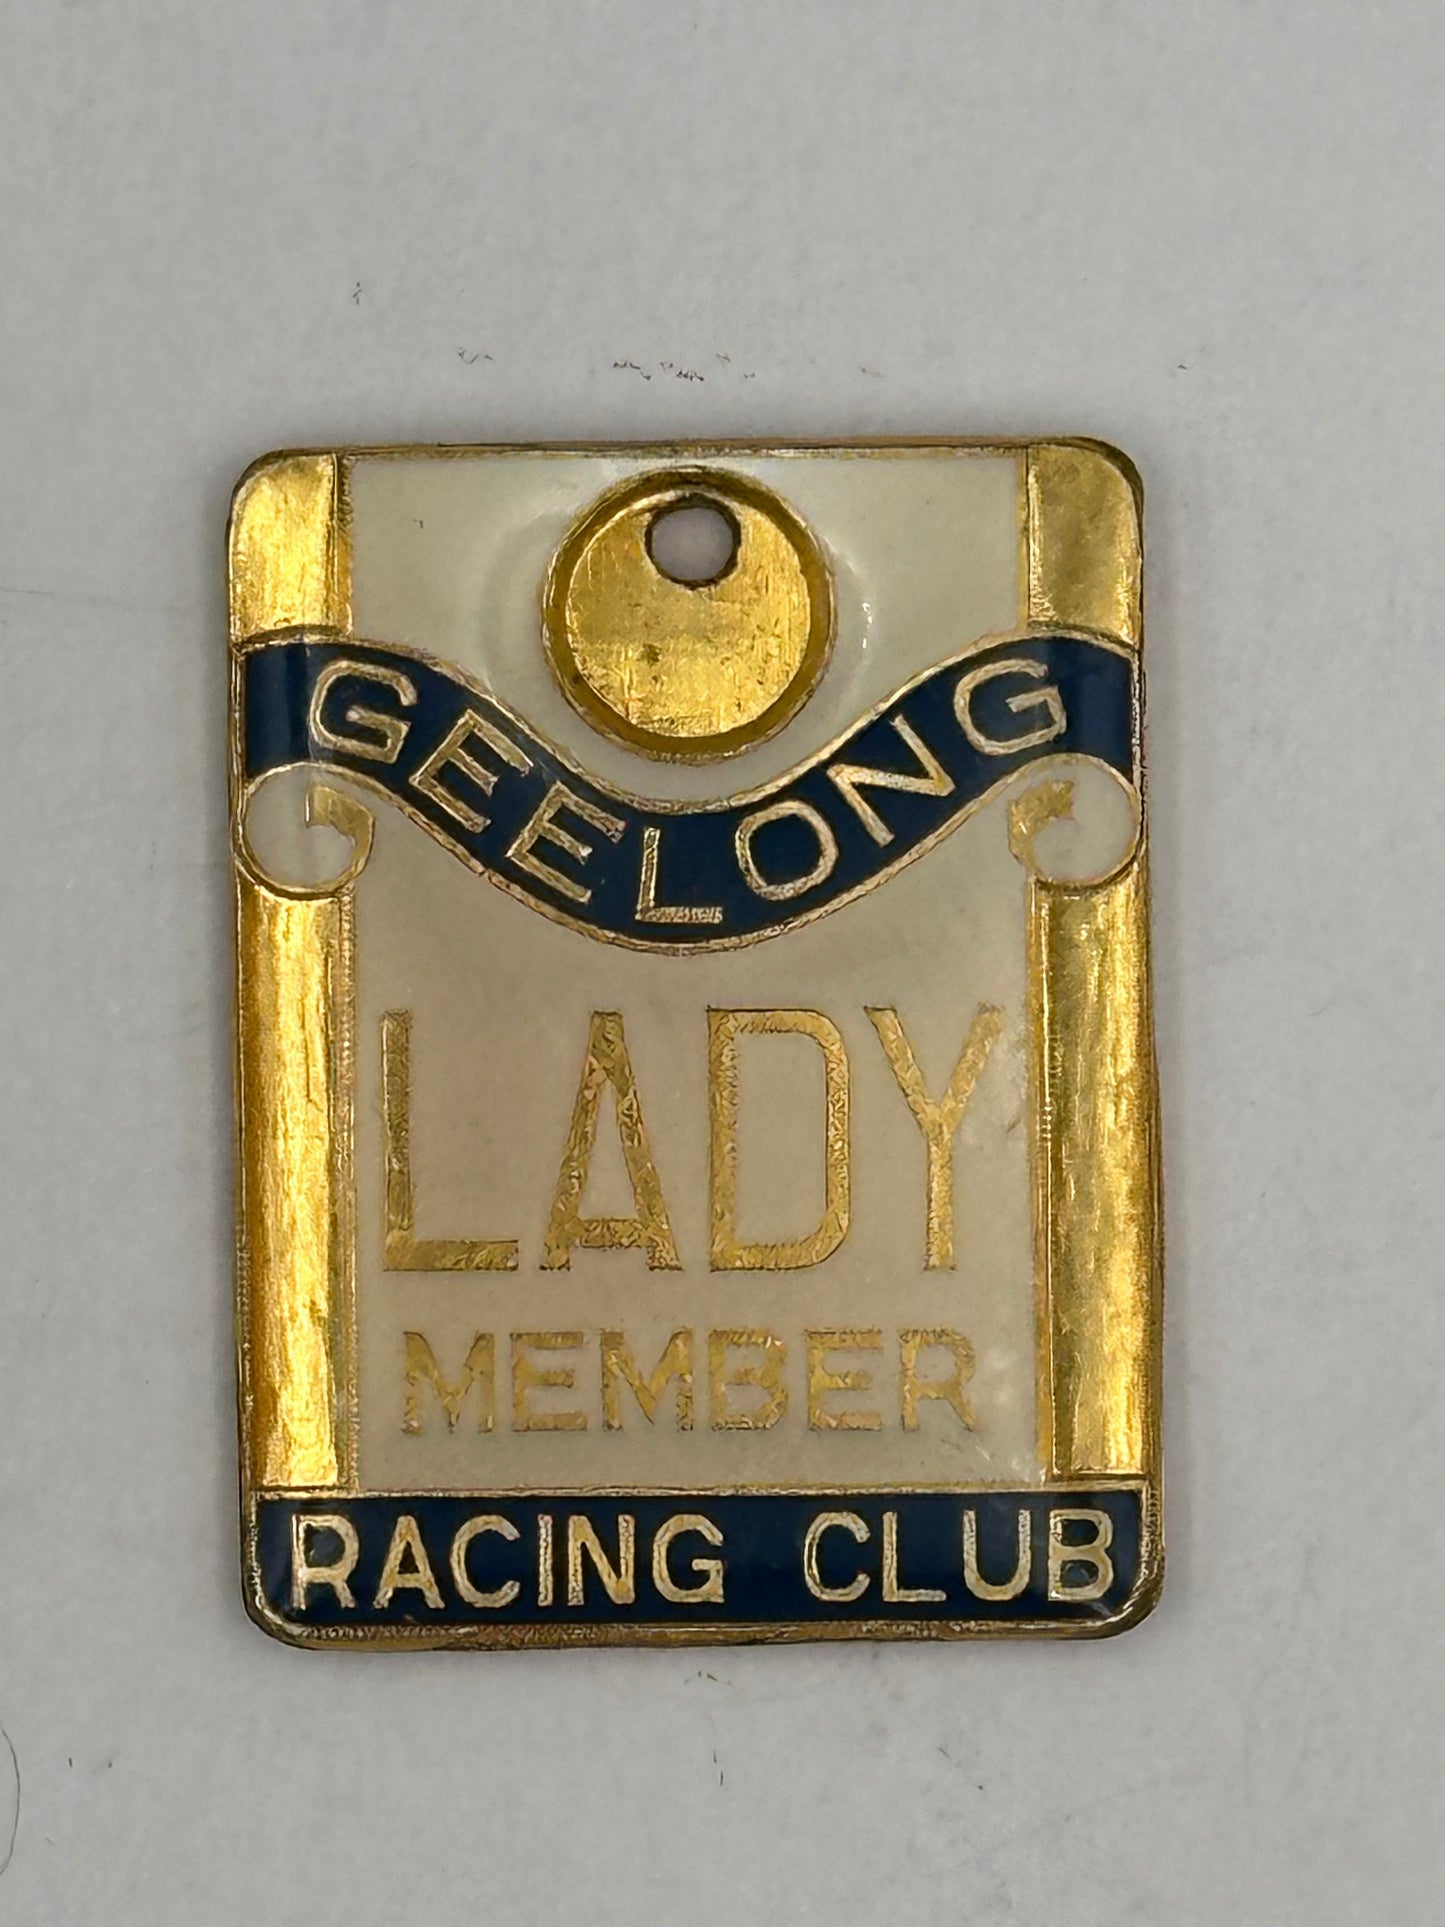 Vintage 1970-1971 Geelong Racing Club Lady Membership Enamel Badge